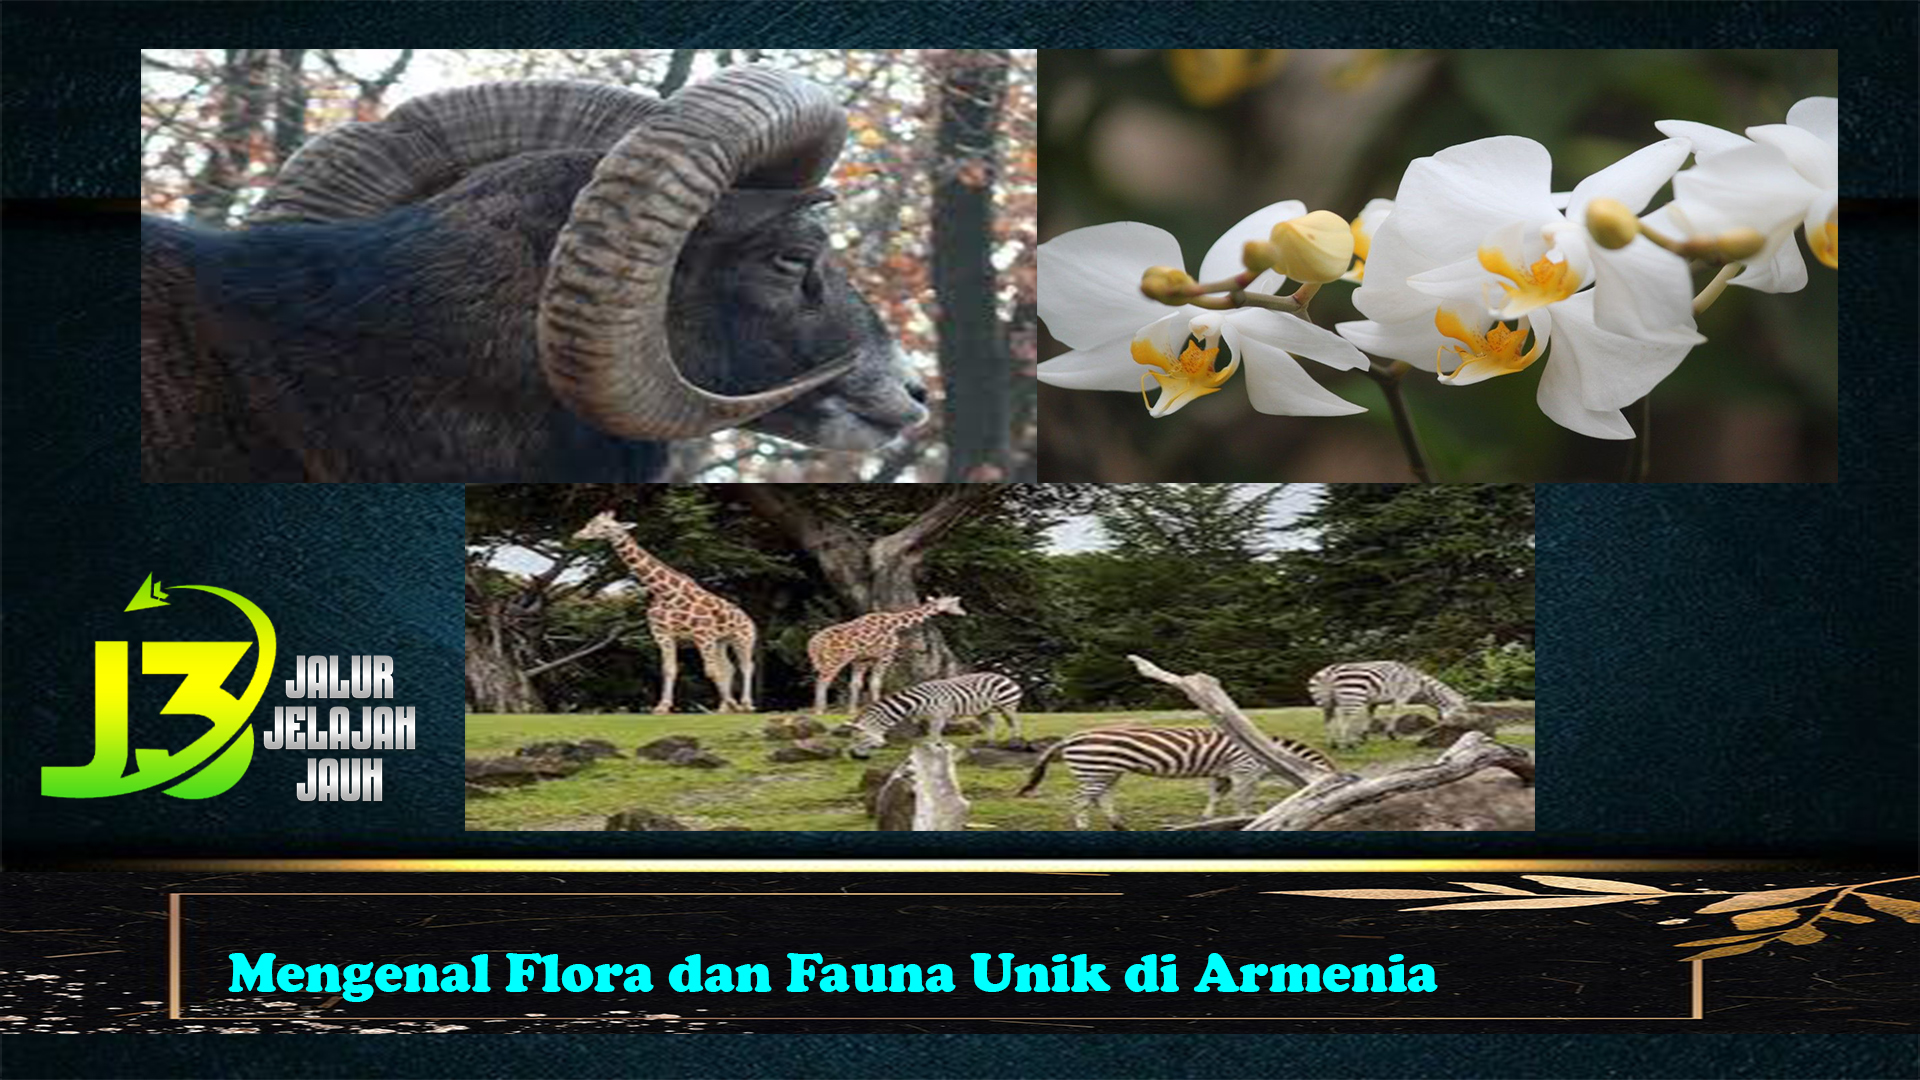 Mengenal Flora dan Fauna Unik di Armenia